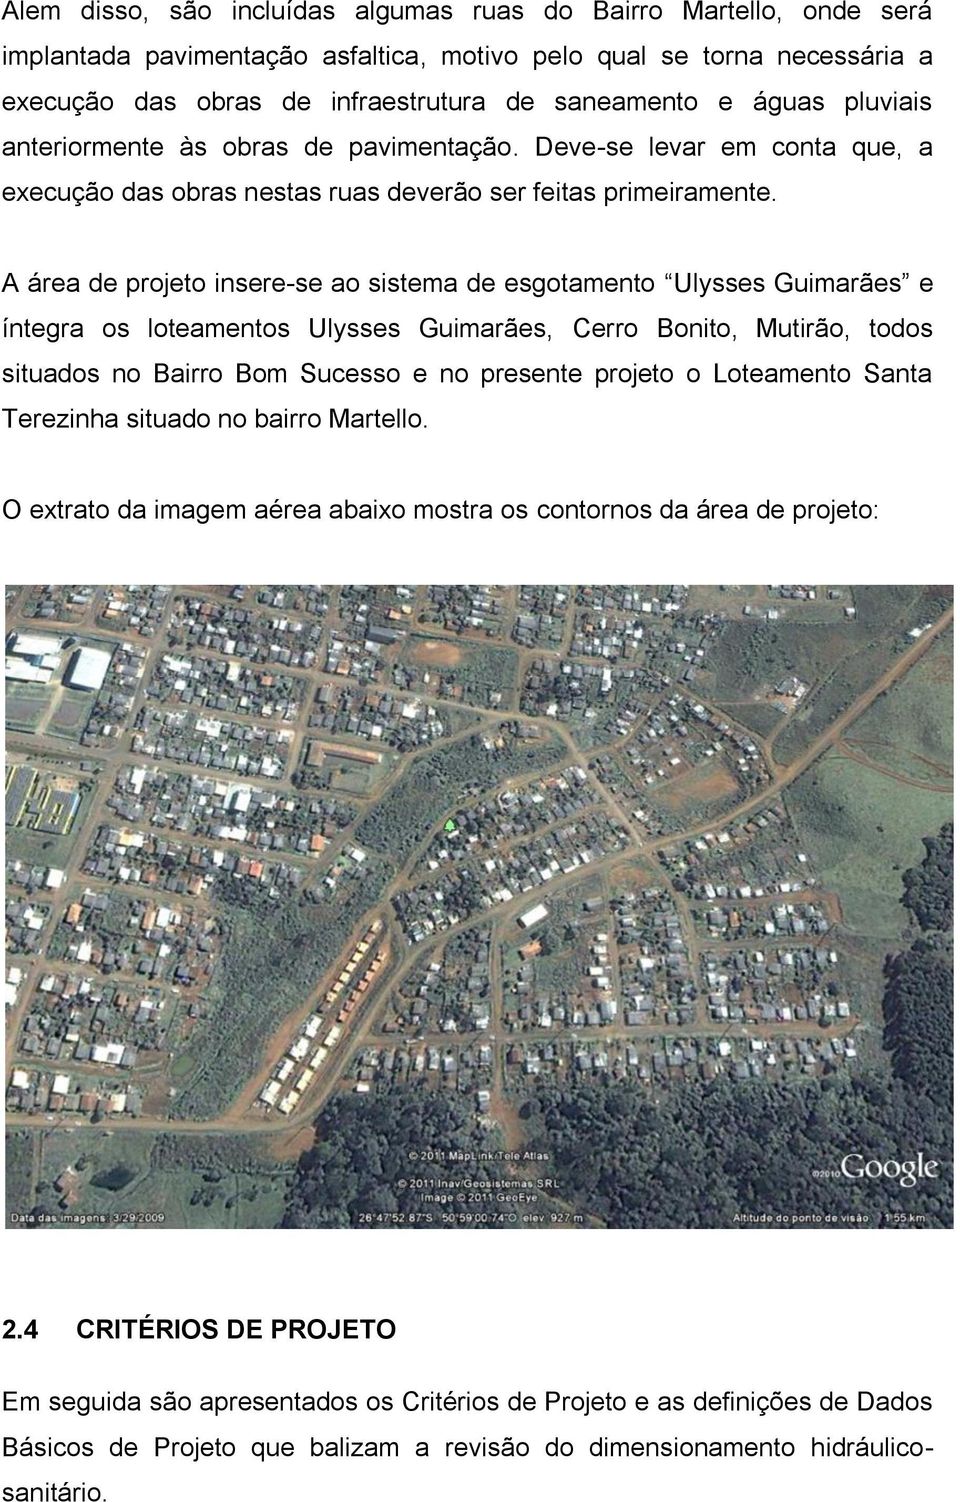 A área de projeto insere-se ao sistema de esgotamento Ulysses Guimarães e íntegra os loteamentos Ulysses Guimarães, Cerro Bonito, Mutirão, todos situados no Bairro Bom Sucesso e no presente projeto o